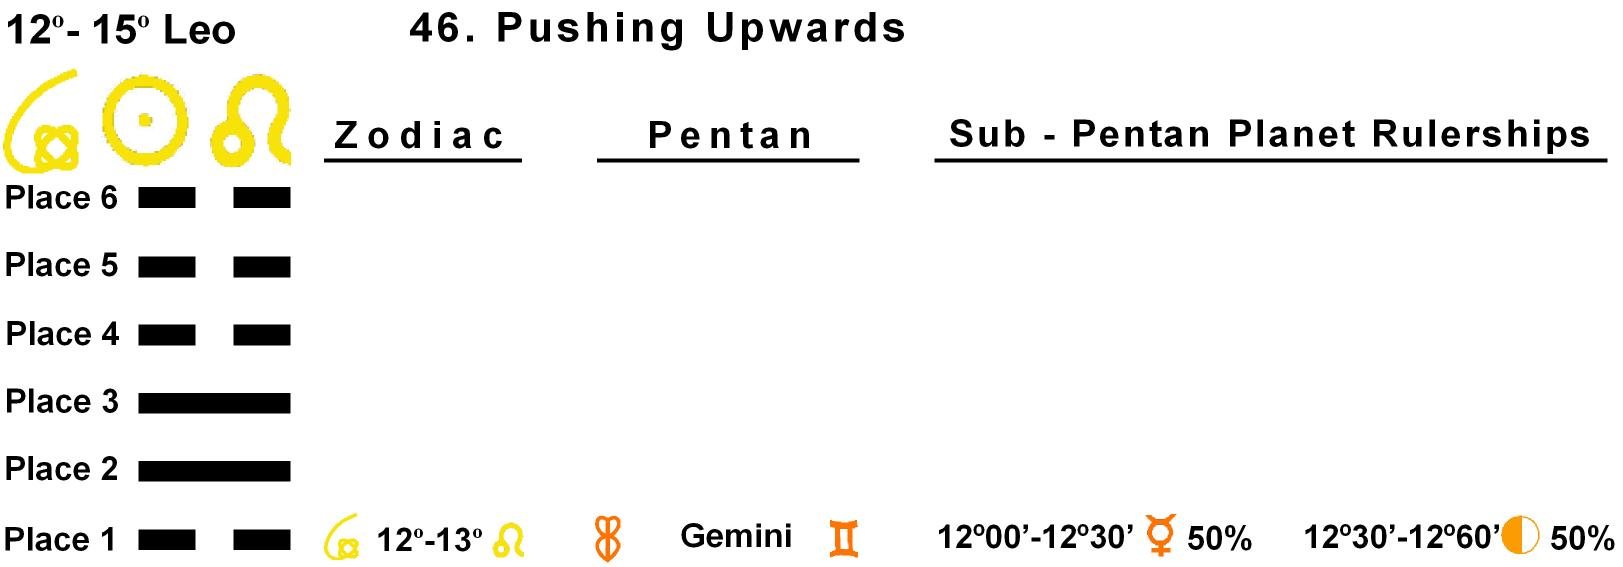 Pent-lines-05LE 12-13 Hx-46-Pushing Upwards